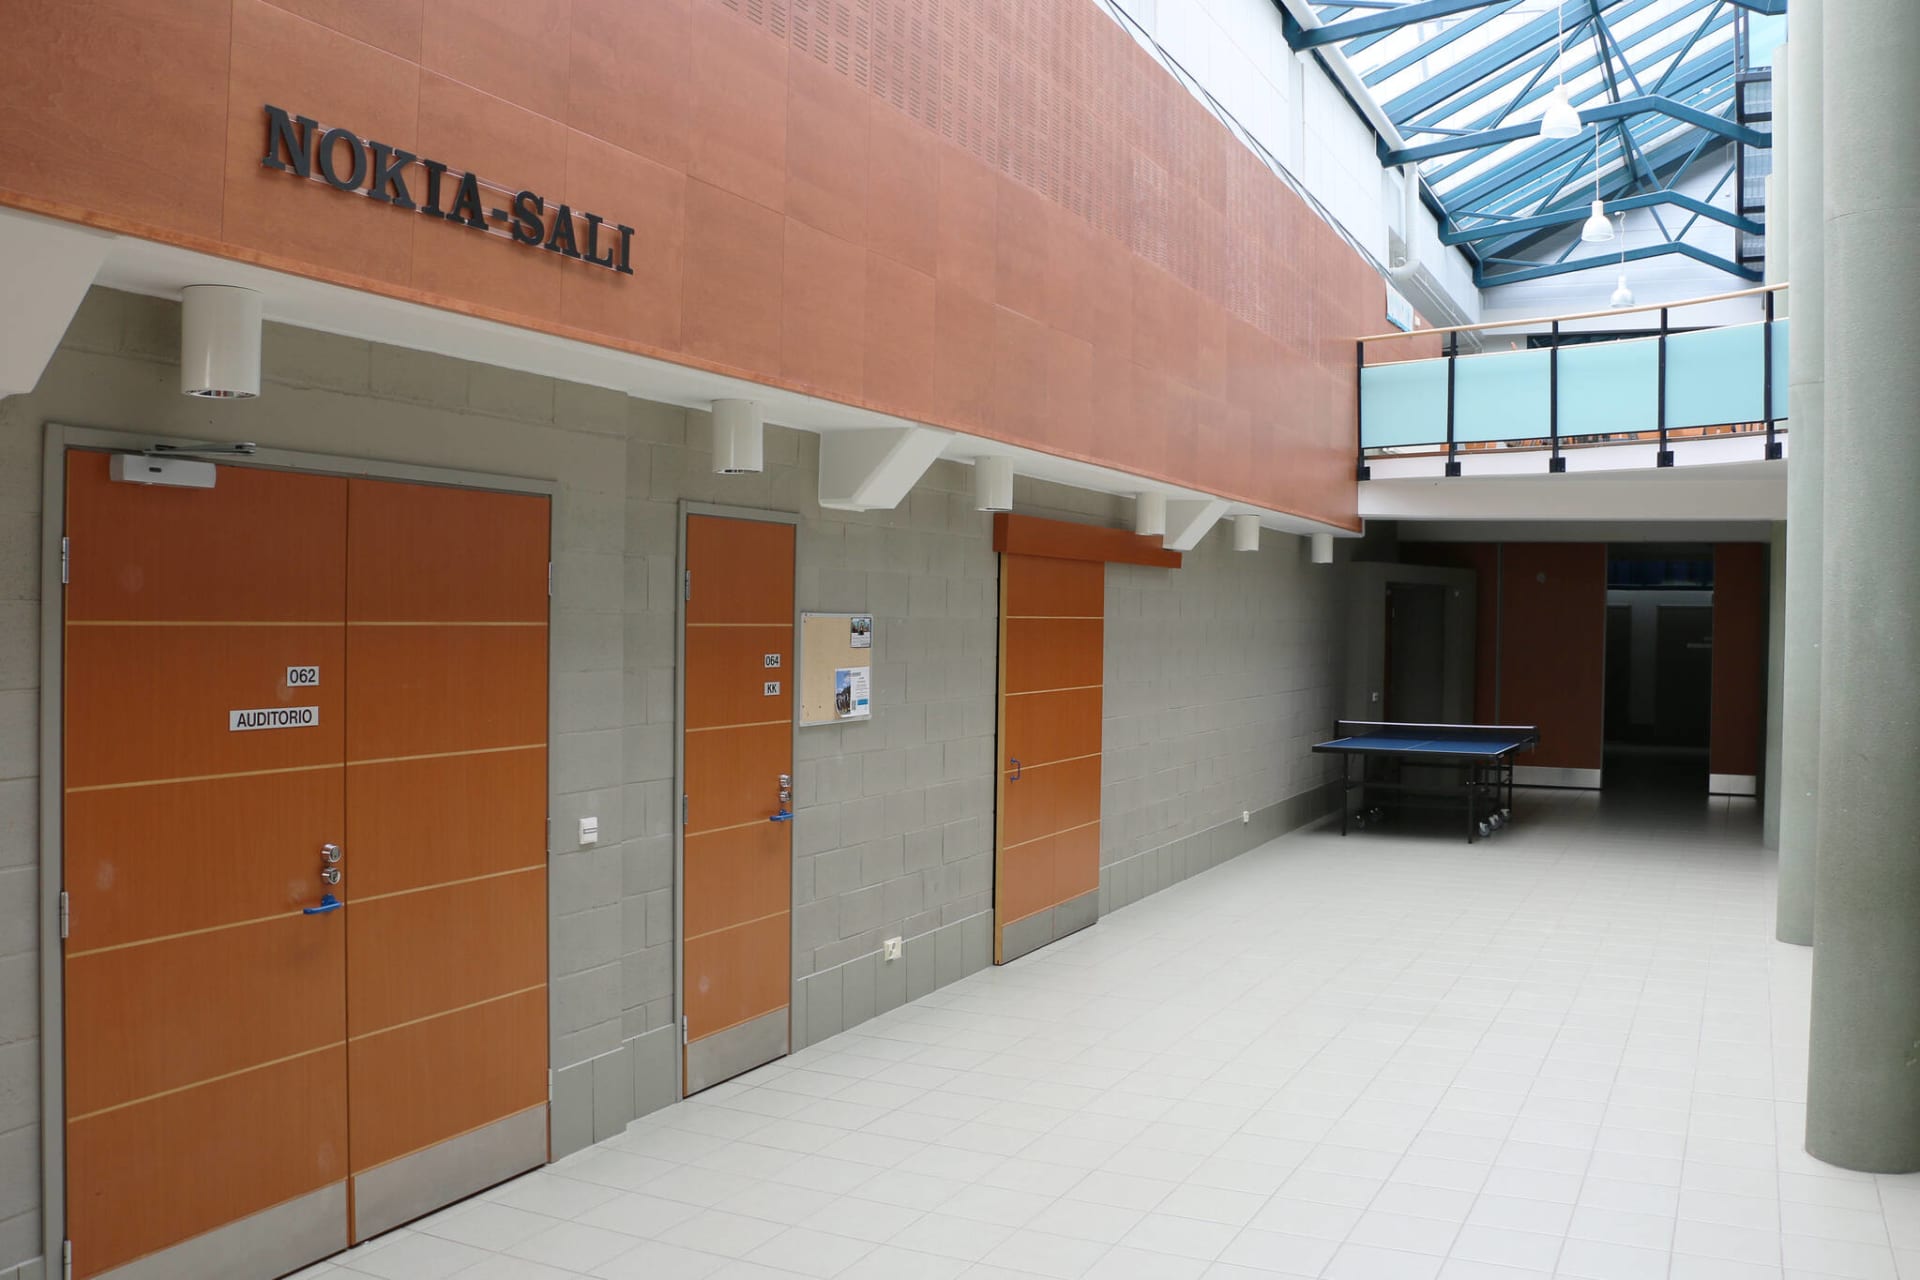 Nokia-salin ovet aulasta kuvattuna.